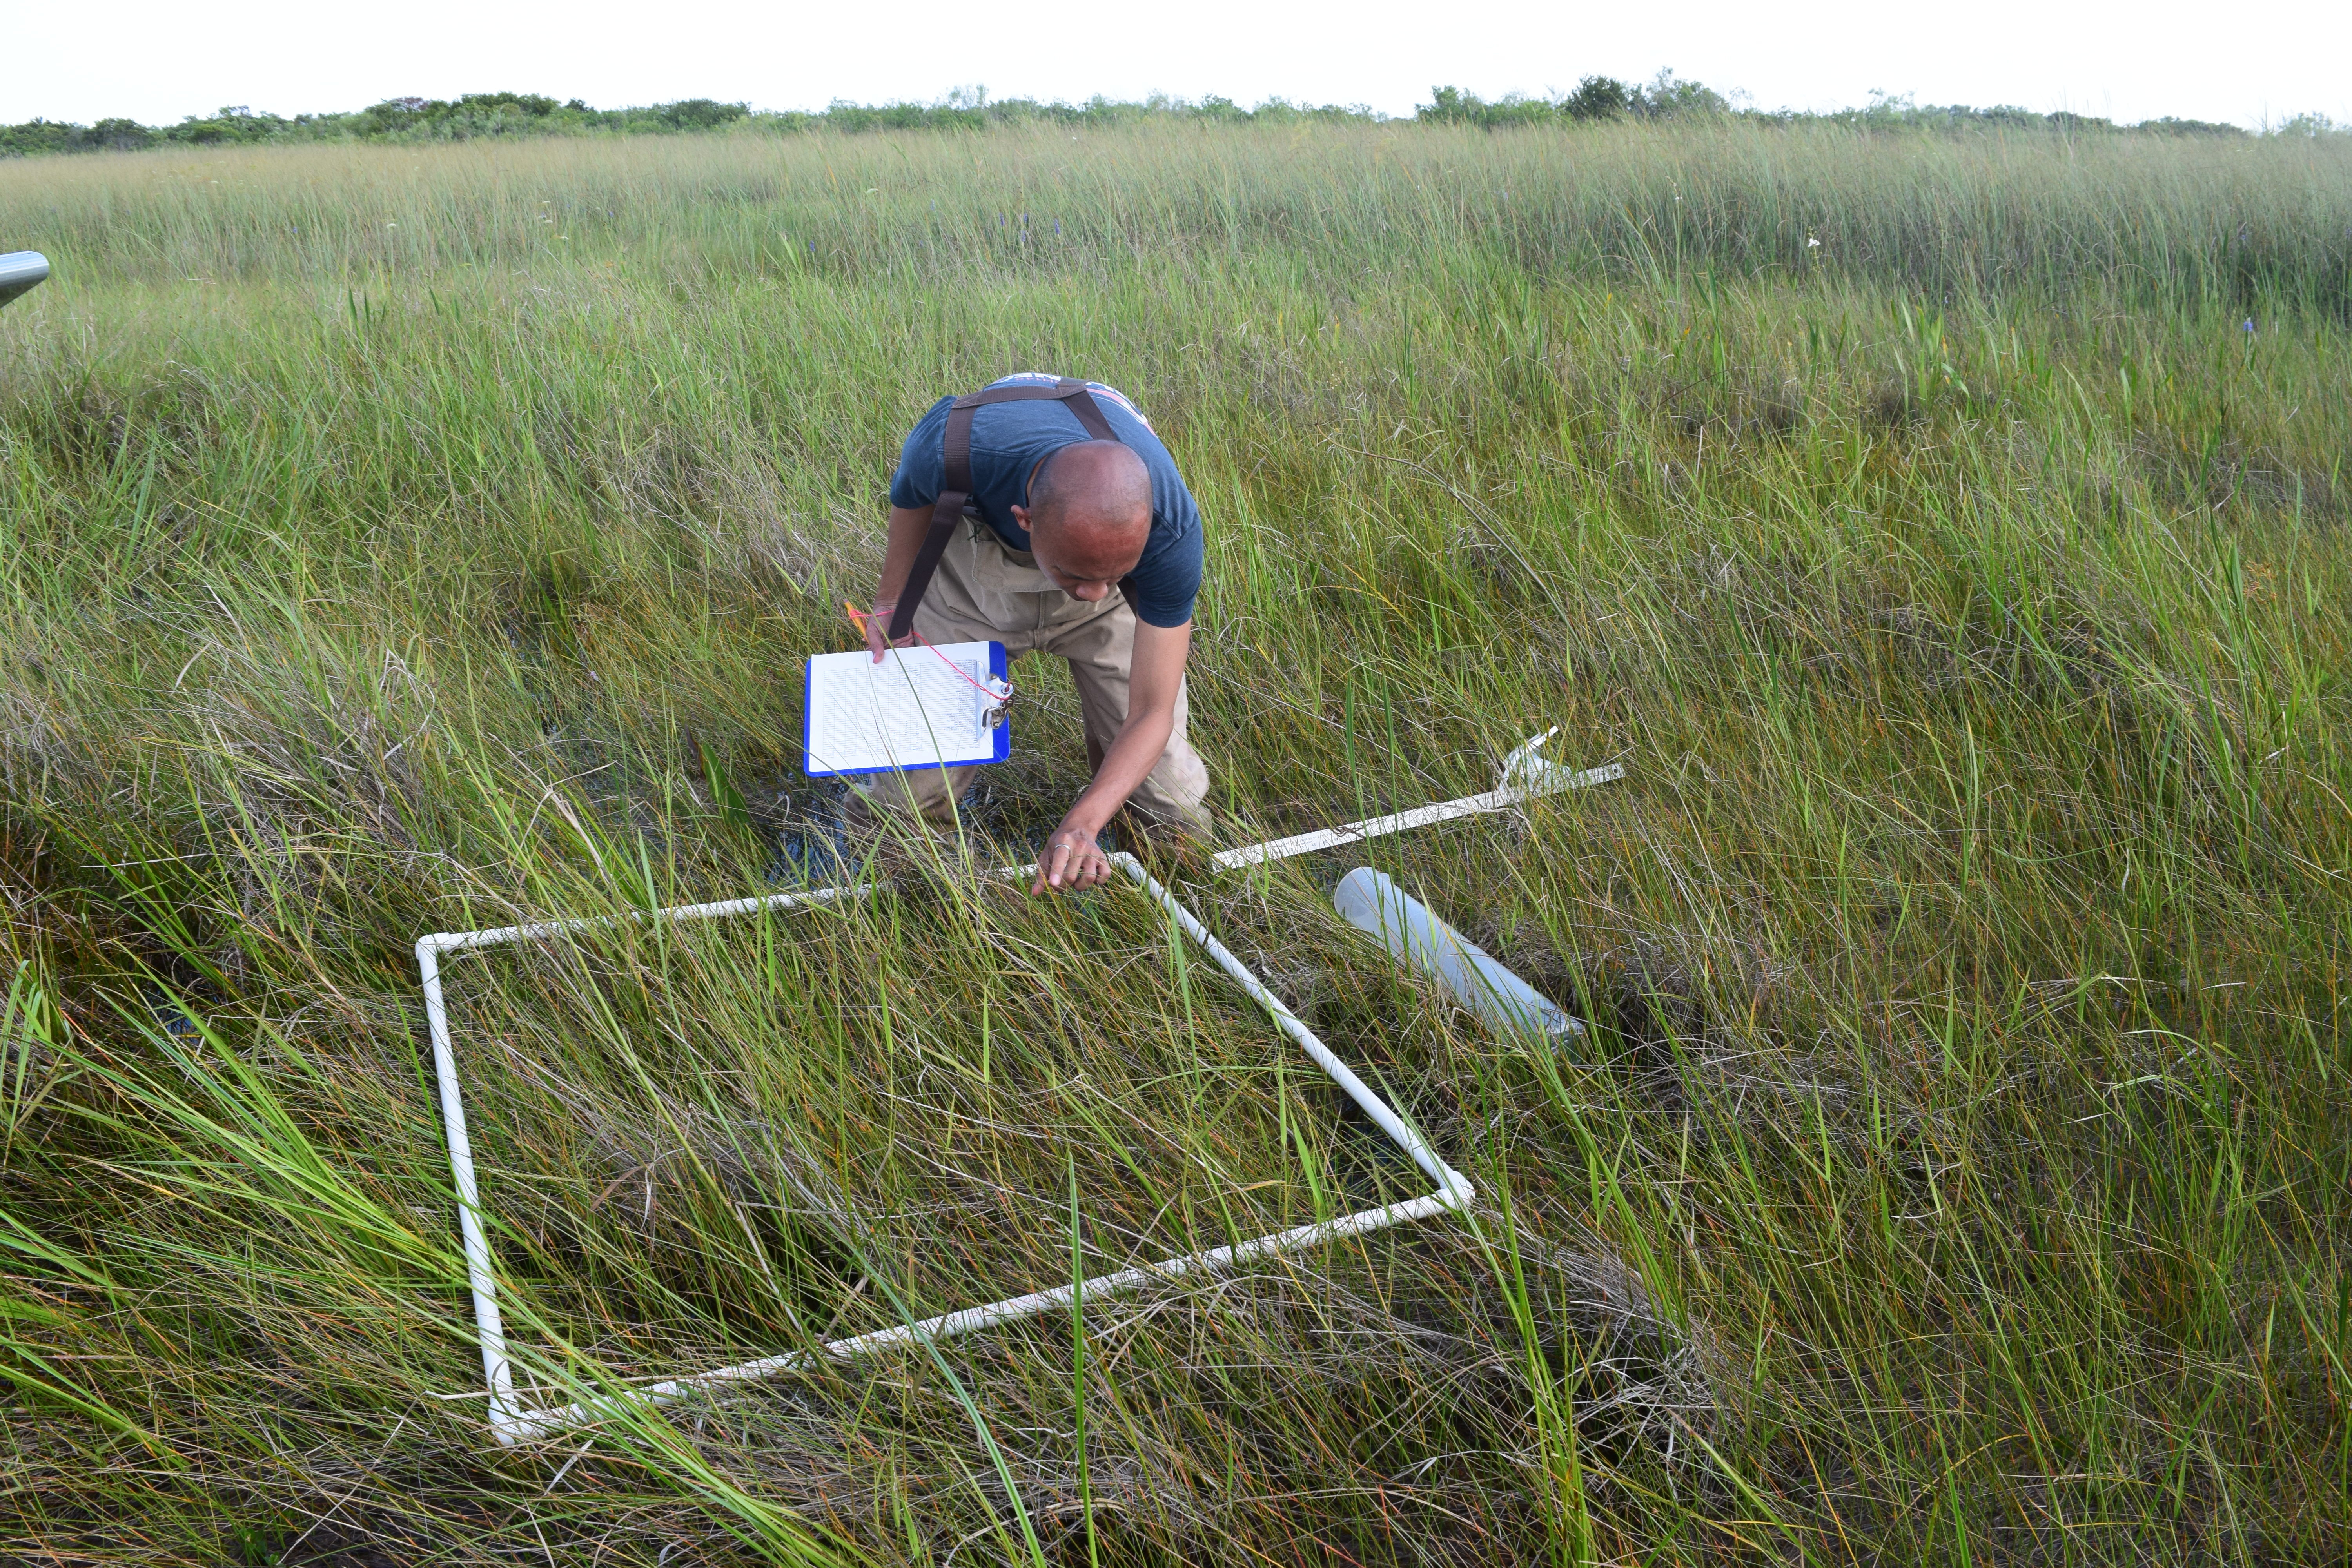 Franco Tobias sampling plants at SRS-3, Shark River Slough